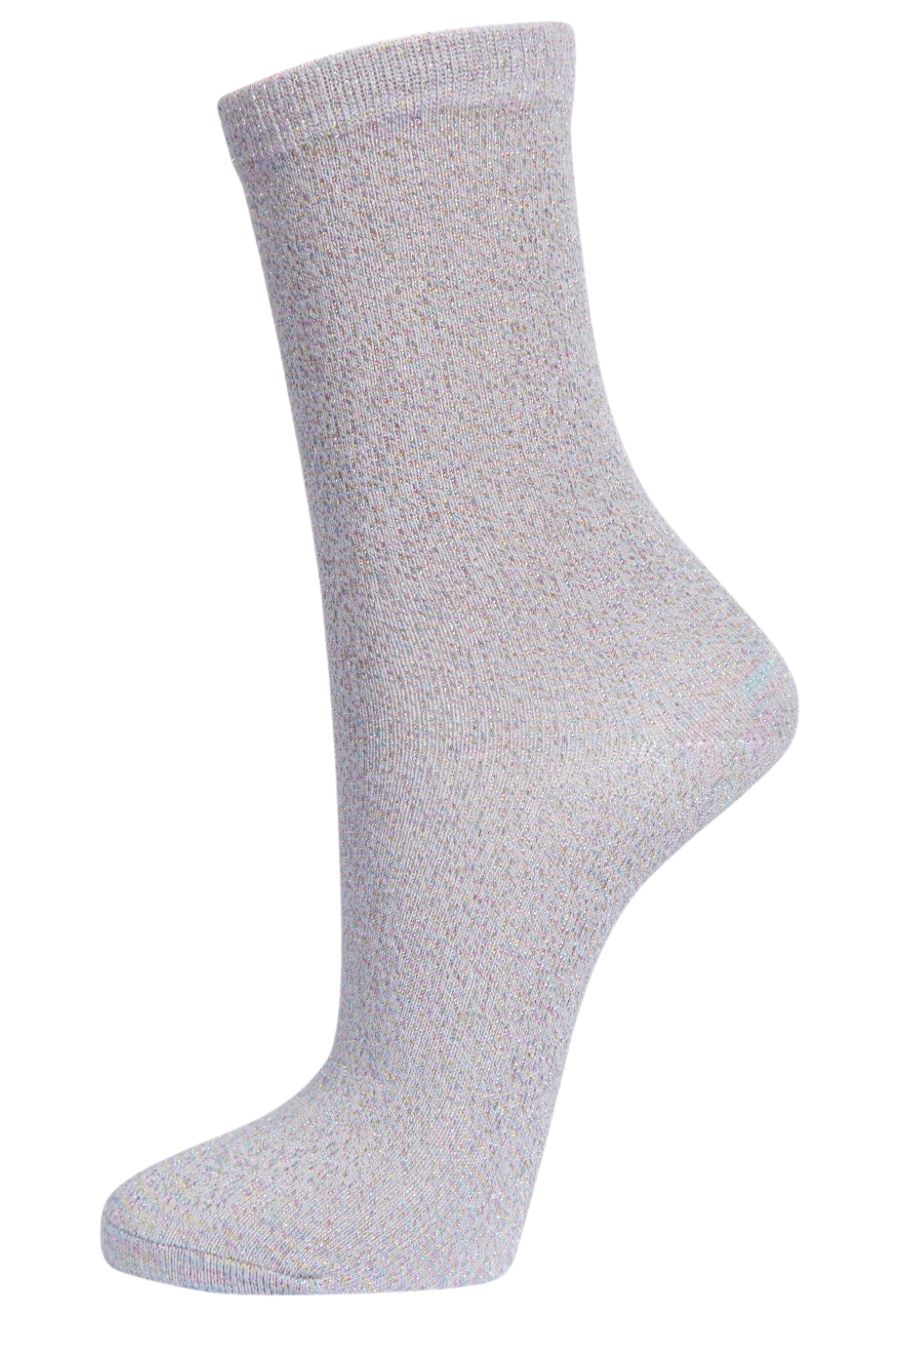 Womens Rainbow Glitter Socks Shimmer Sparkle Ankle Socks Grey